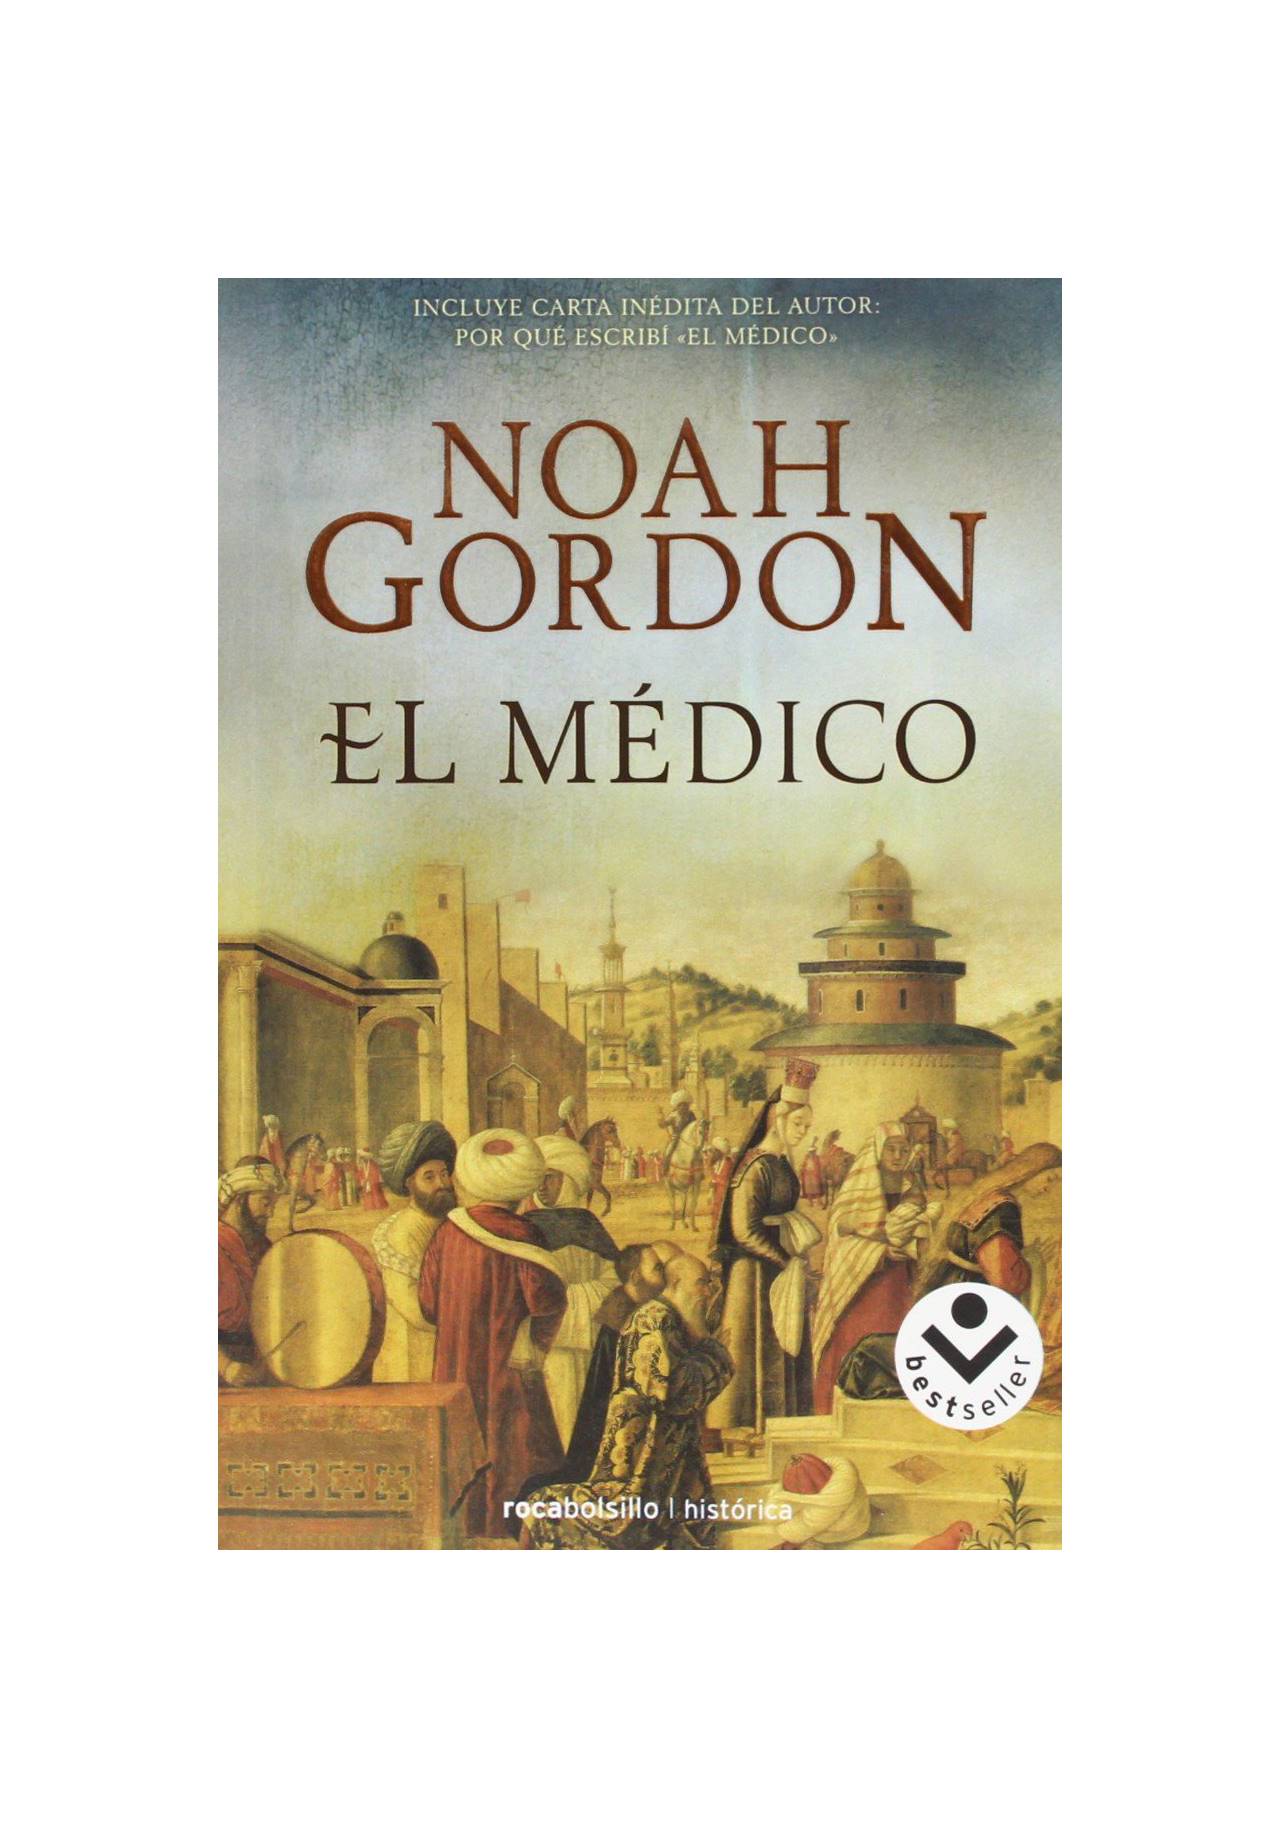 Novelas históricas imprescindibles: El Médico de Noah Gordon (2008, Rocabolsillo)